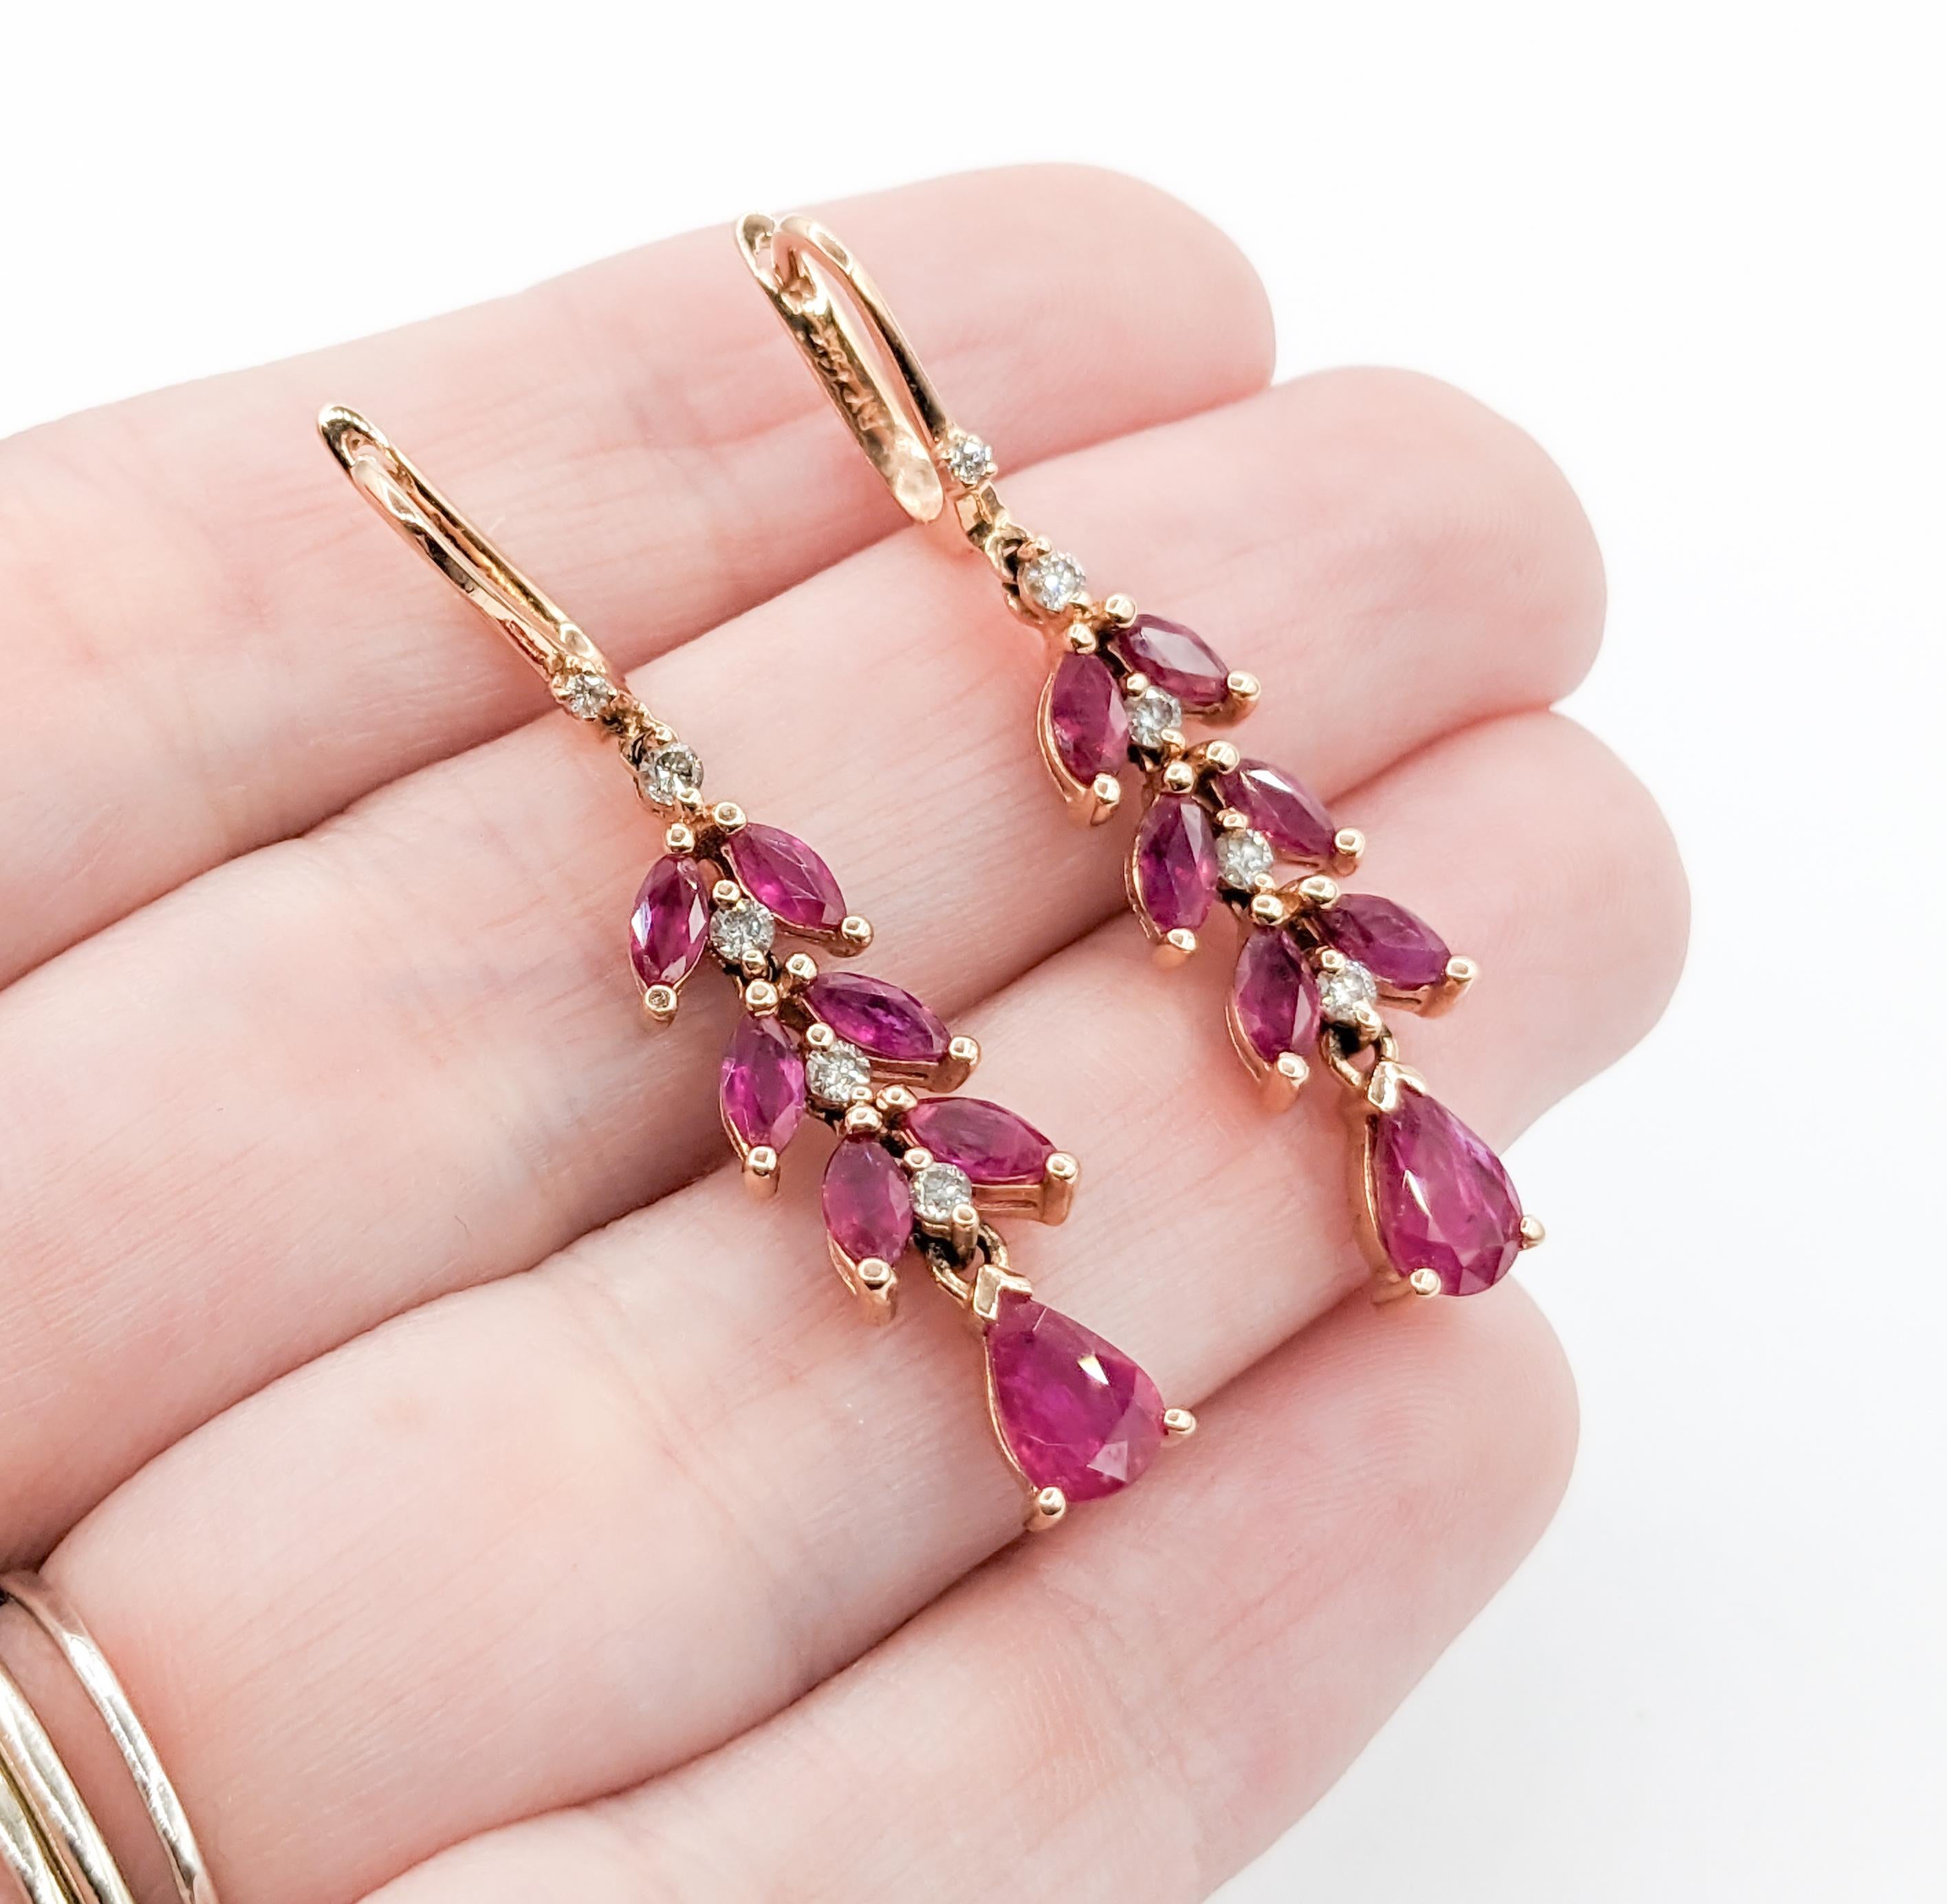 Romantische Rubin- und Diamanttropfen-Ohrringe aus Roségold

Schmücken Sie sich mit zeitloser Eleganz mit unseren exquisiten Ohrringen, die fachmännisch in zauberhaftem 14-karätigem Roségold gefertigt sind. Diese bezaubernden Schmuckstücke sind mit